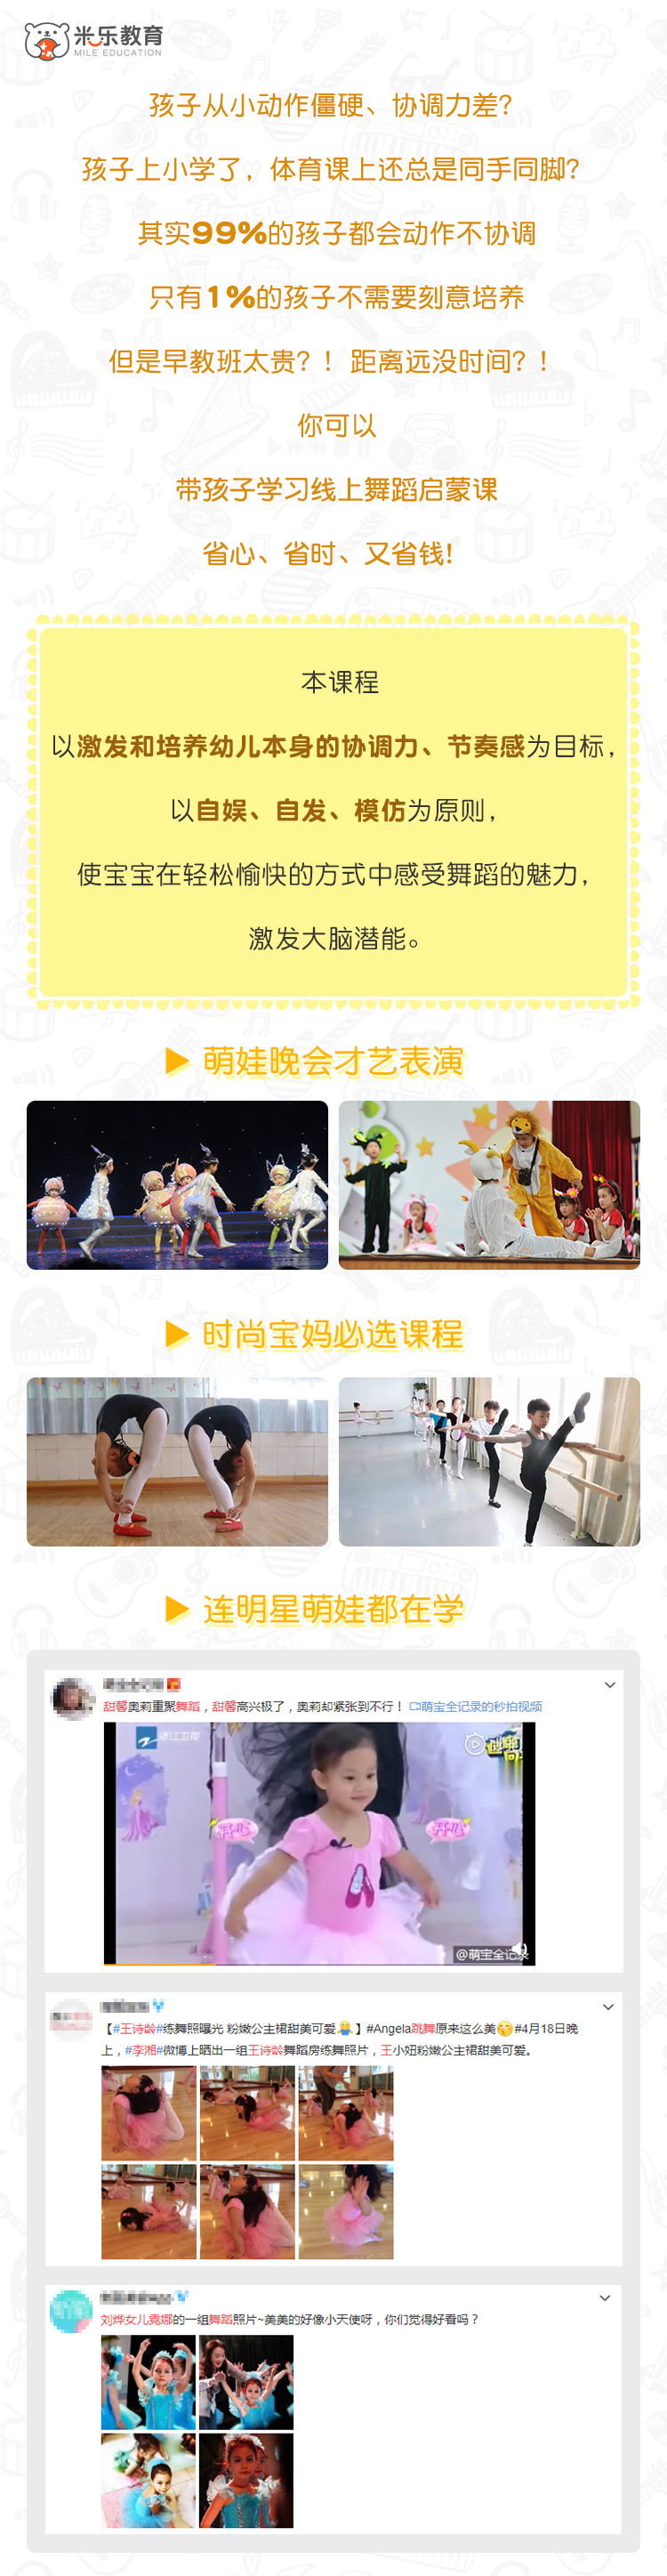 幼儿舞蹈课课程-切图01.jpg